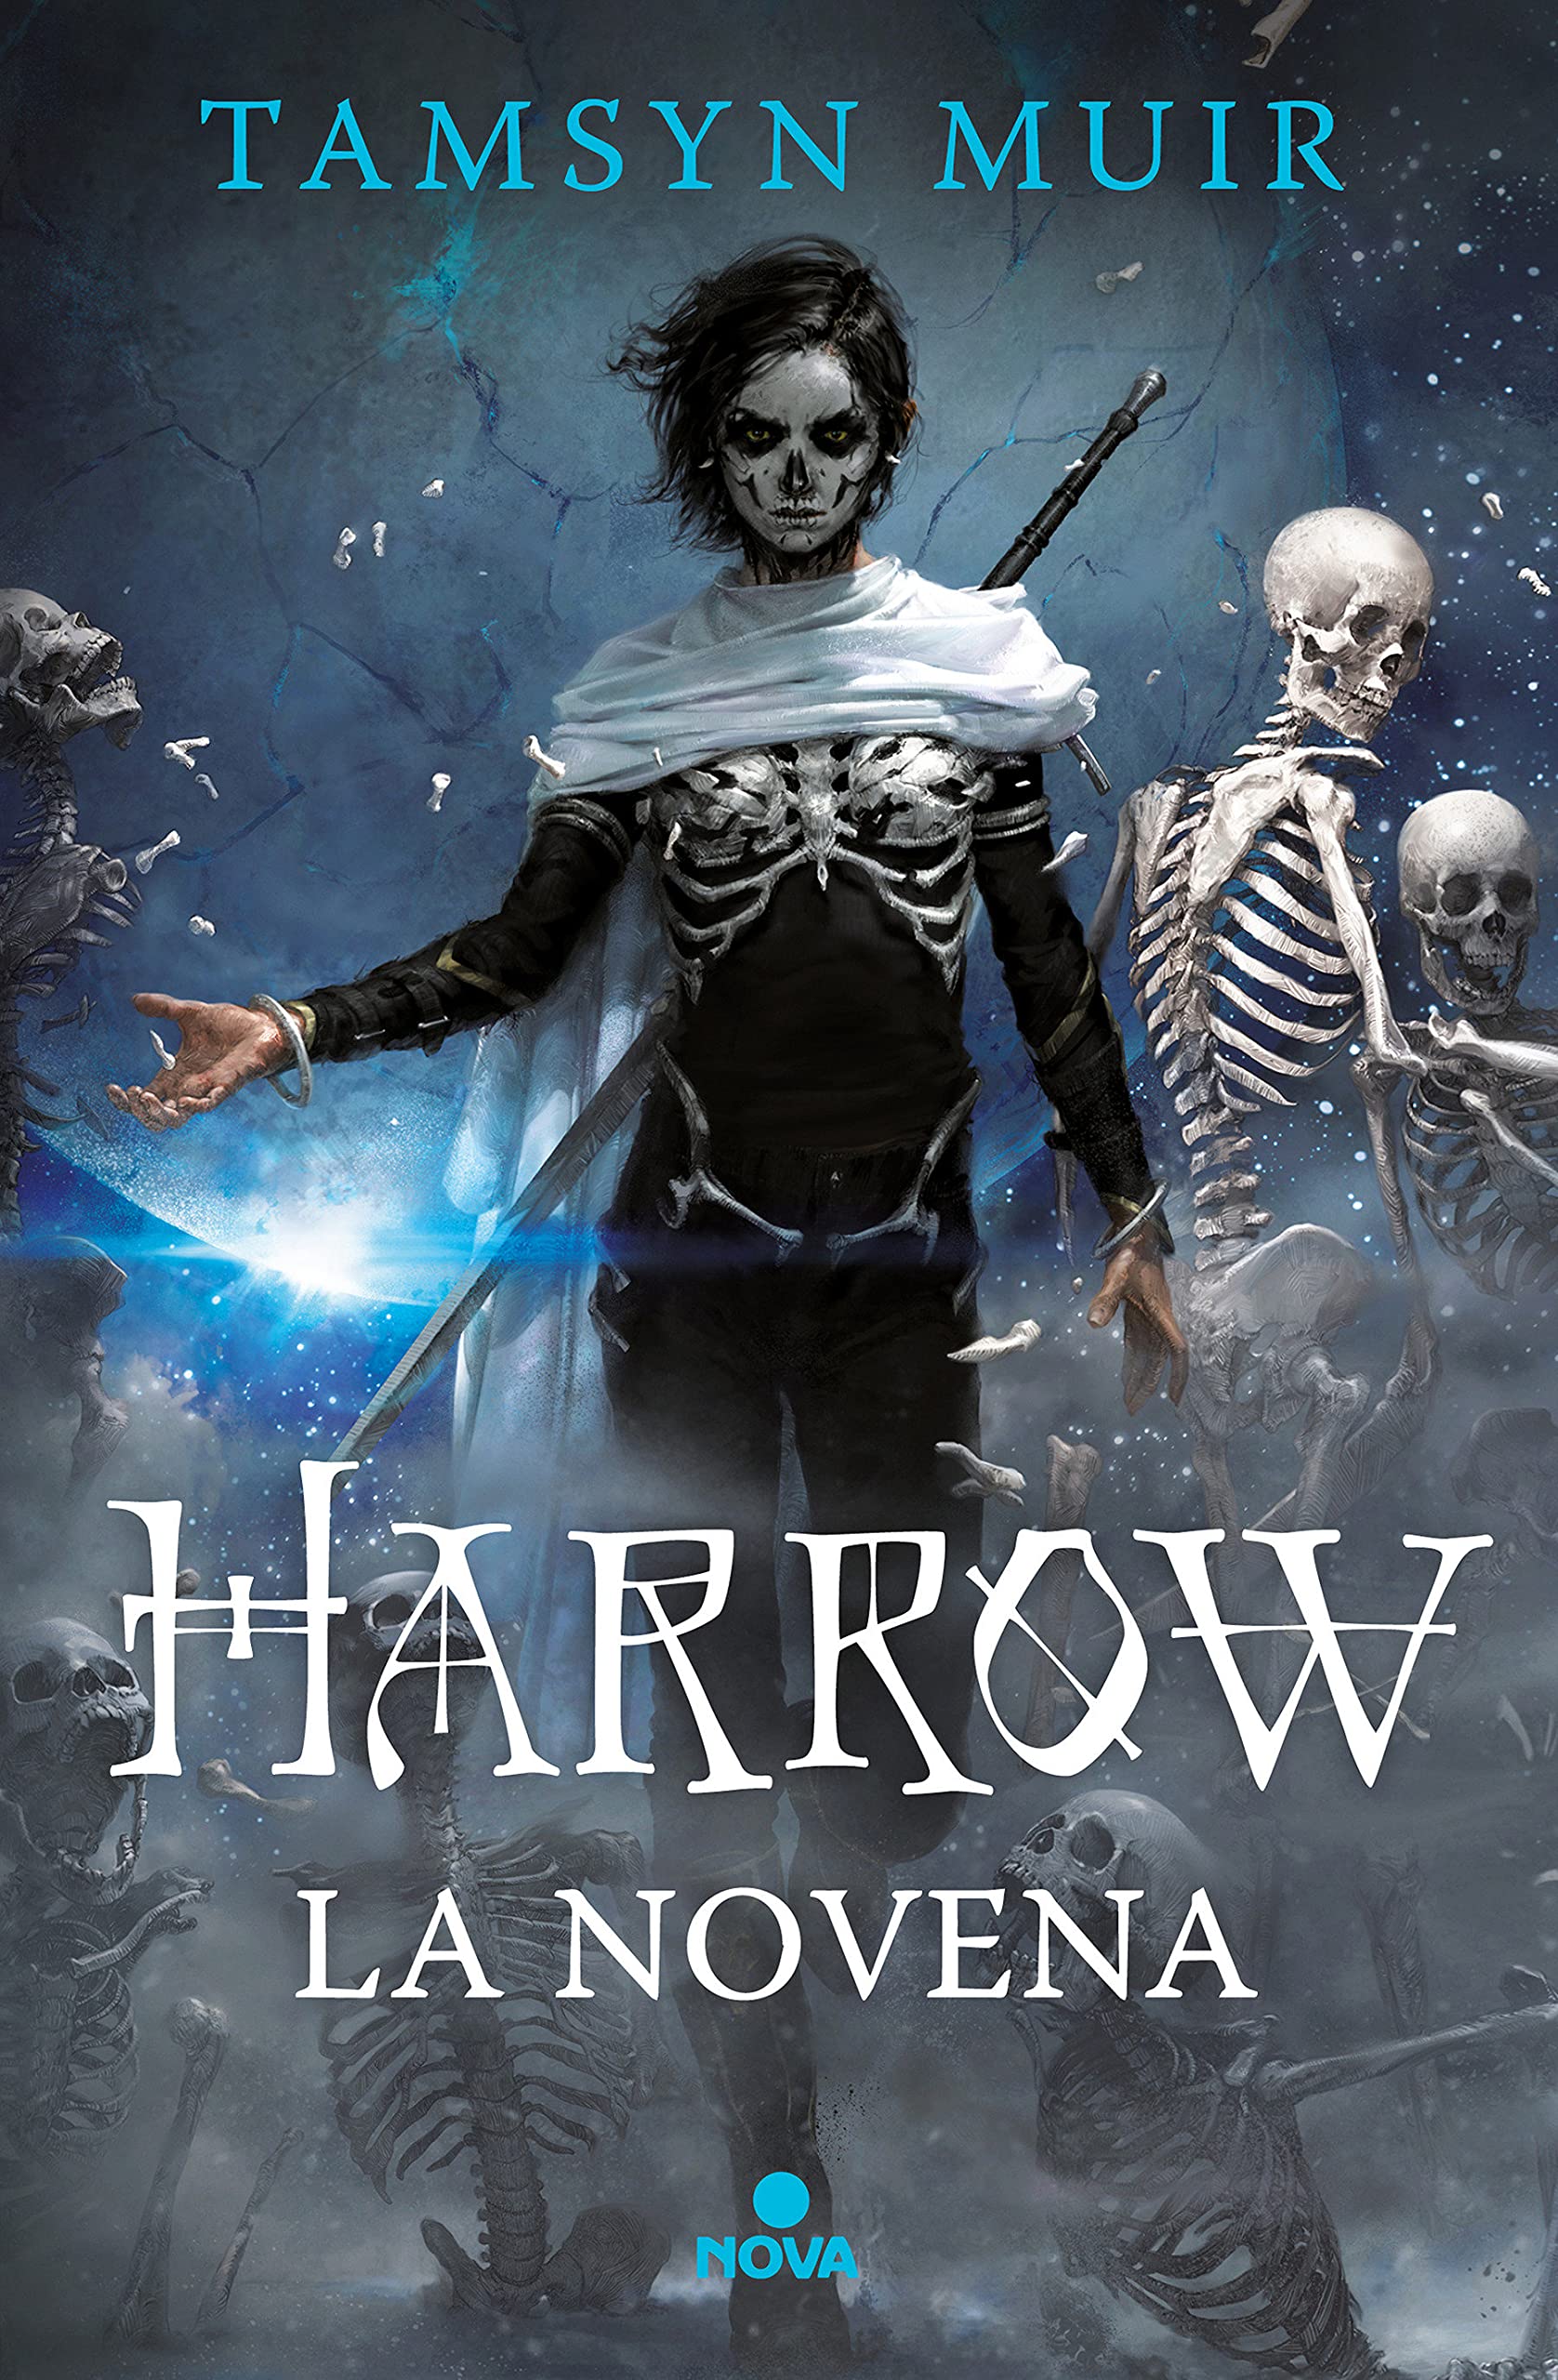 Cover from Harrow la Novena